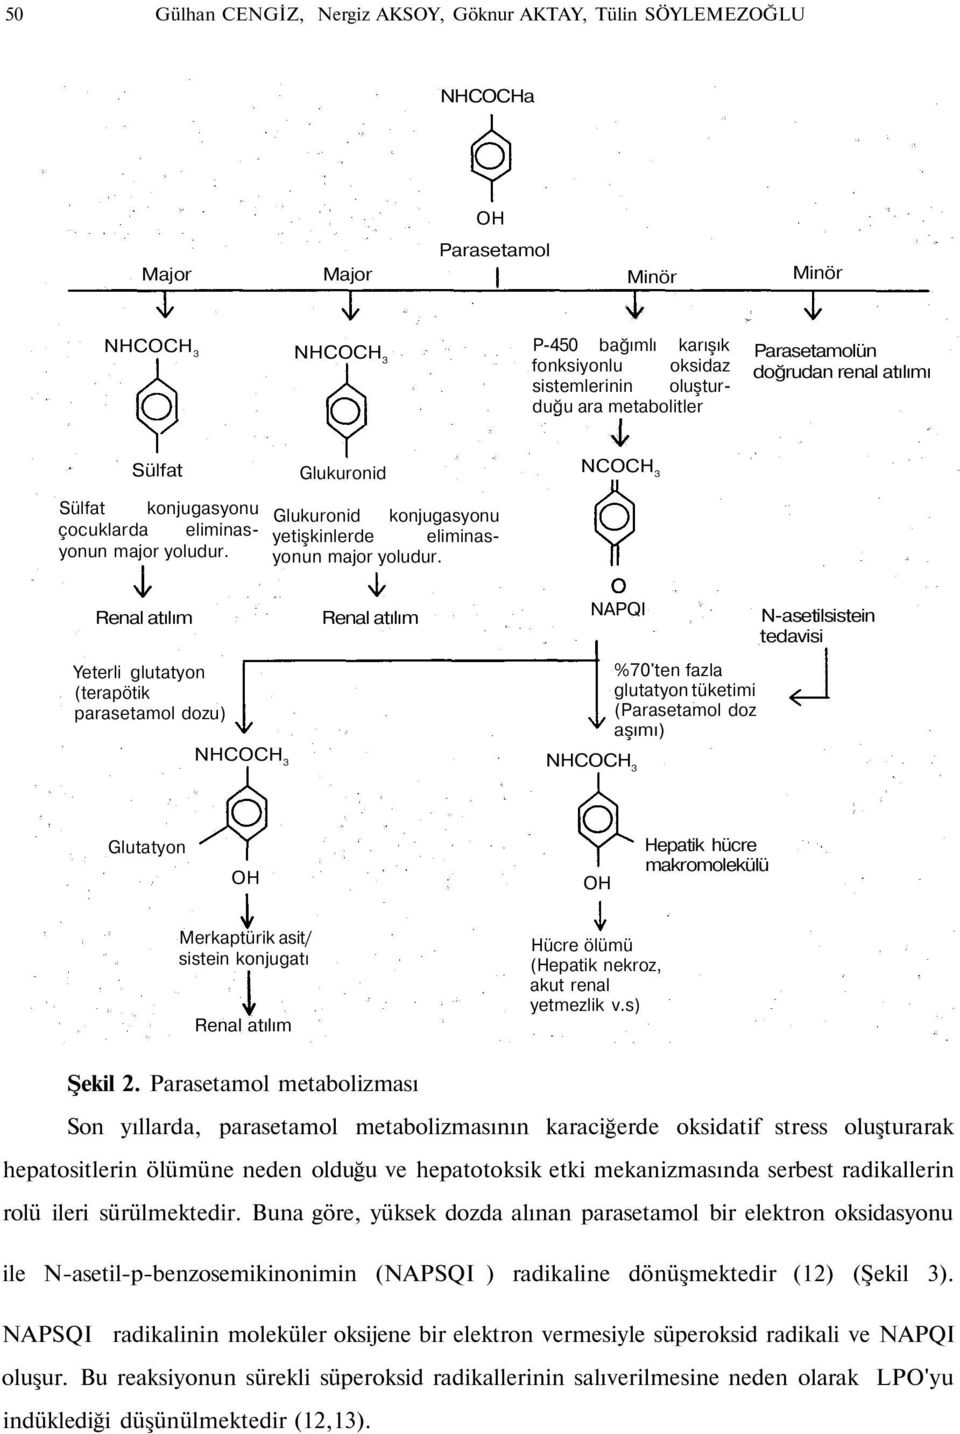 Glukuronid konjugasyonu yetişkinlerde eliminasyonun major yoludur.